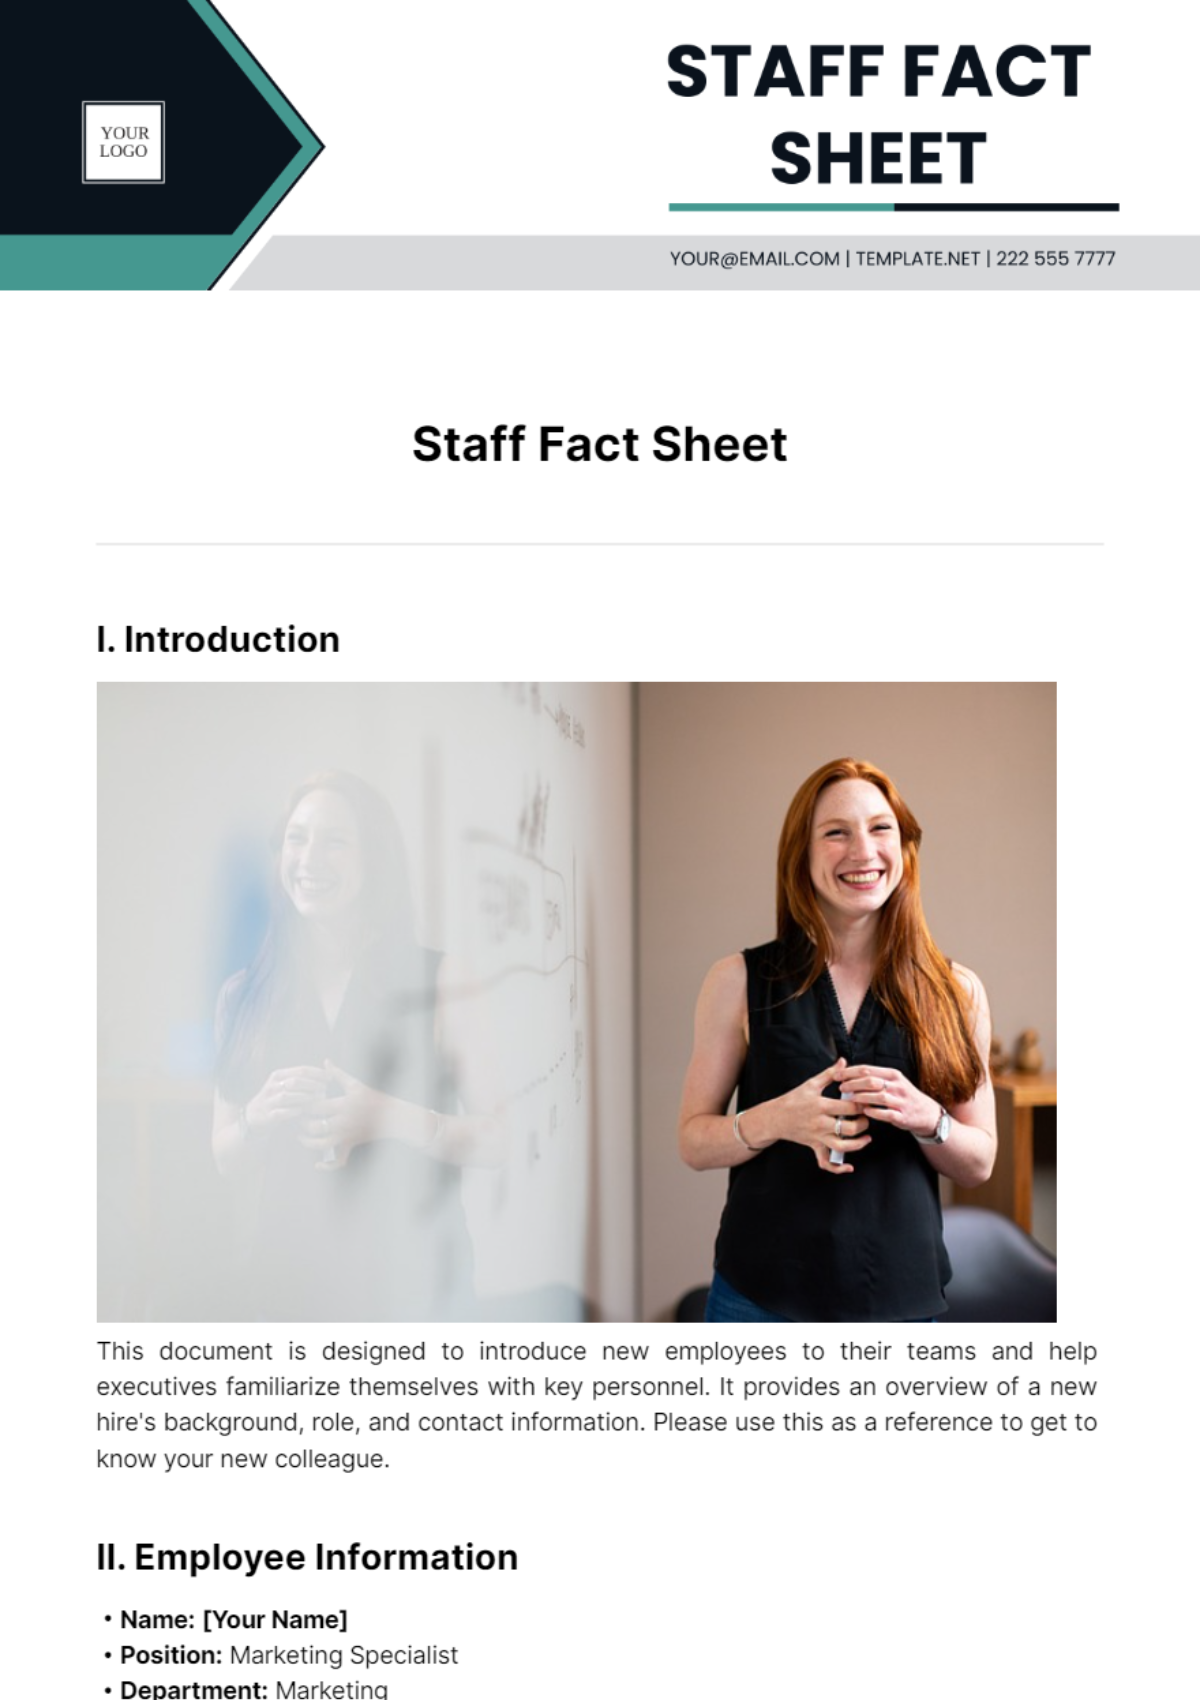 Staff Fact Sheet Template